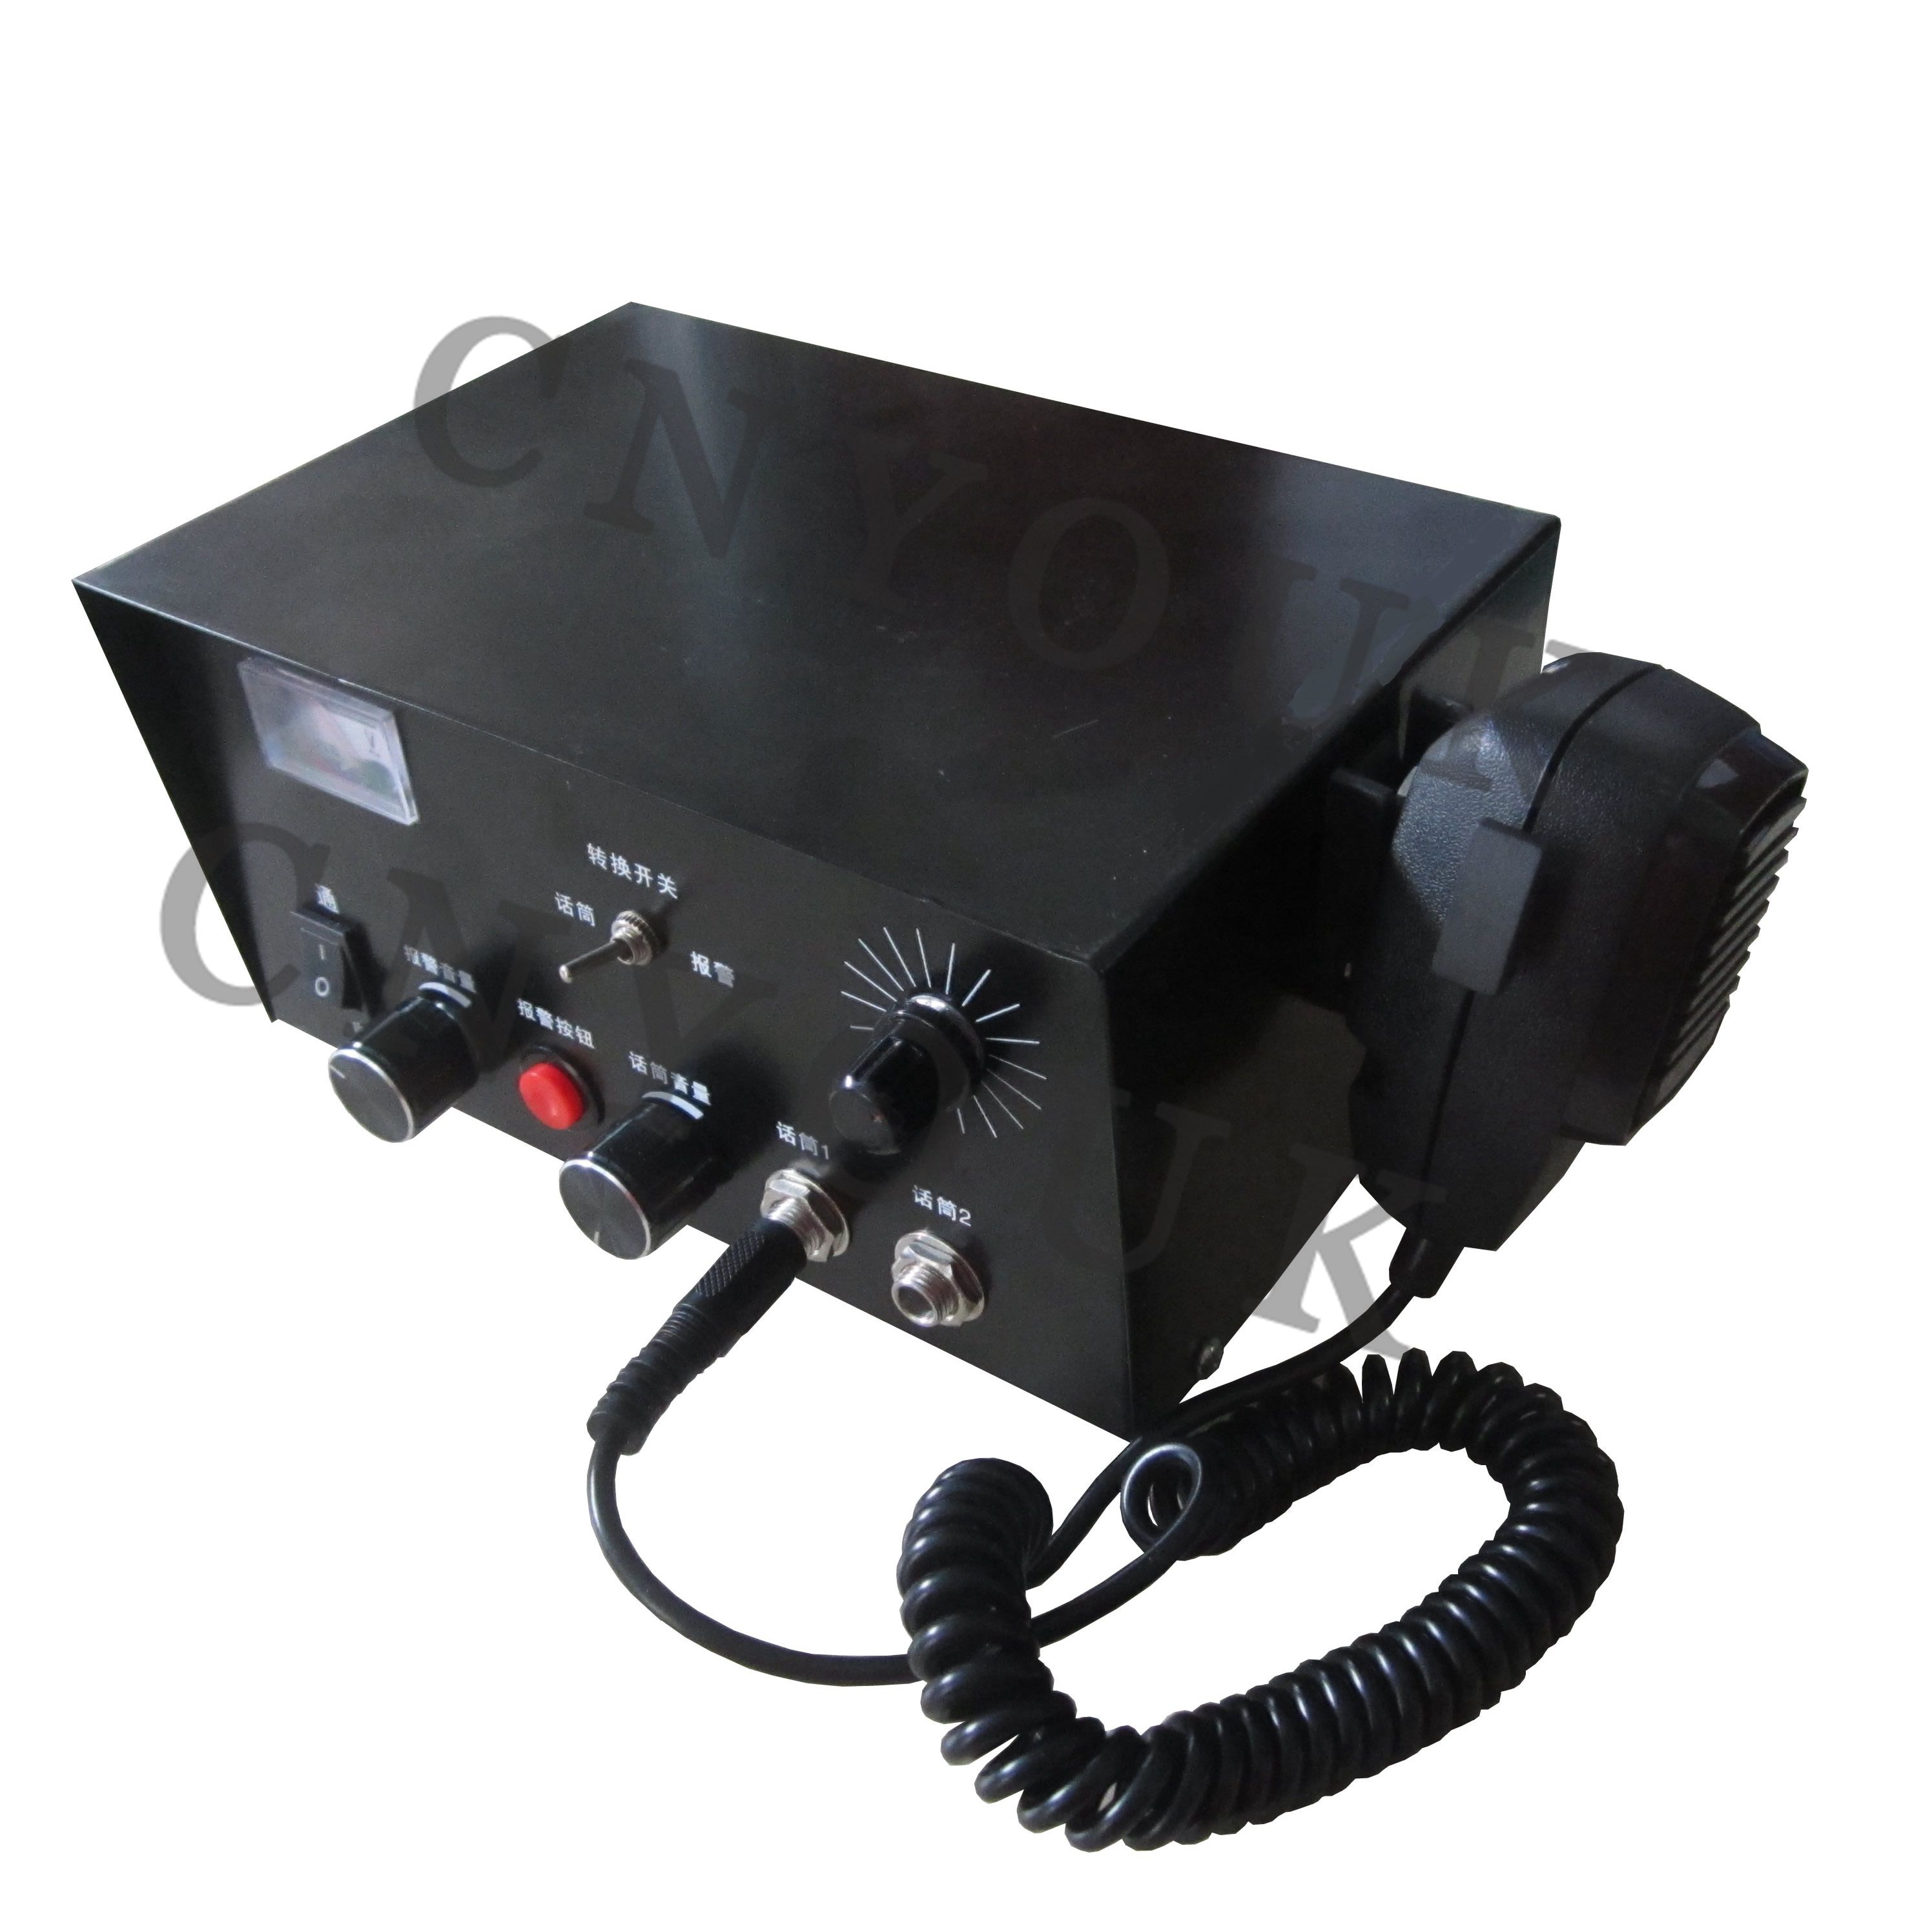 YG-2460PA 多功能声光报警器 天车报警器 行车报警器